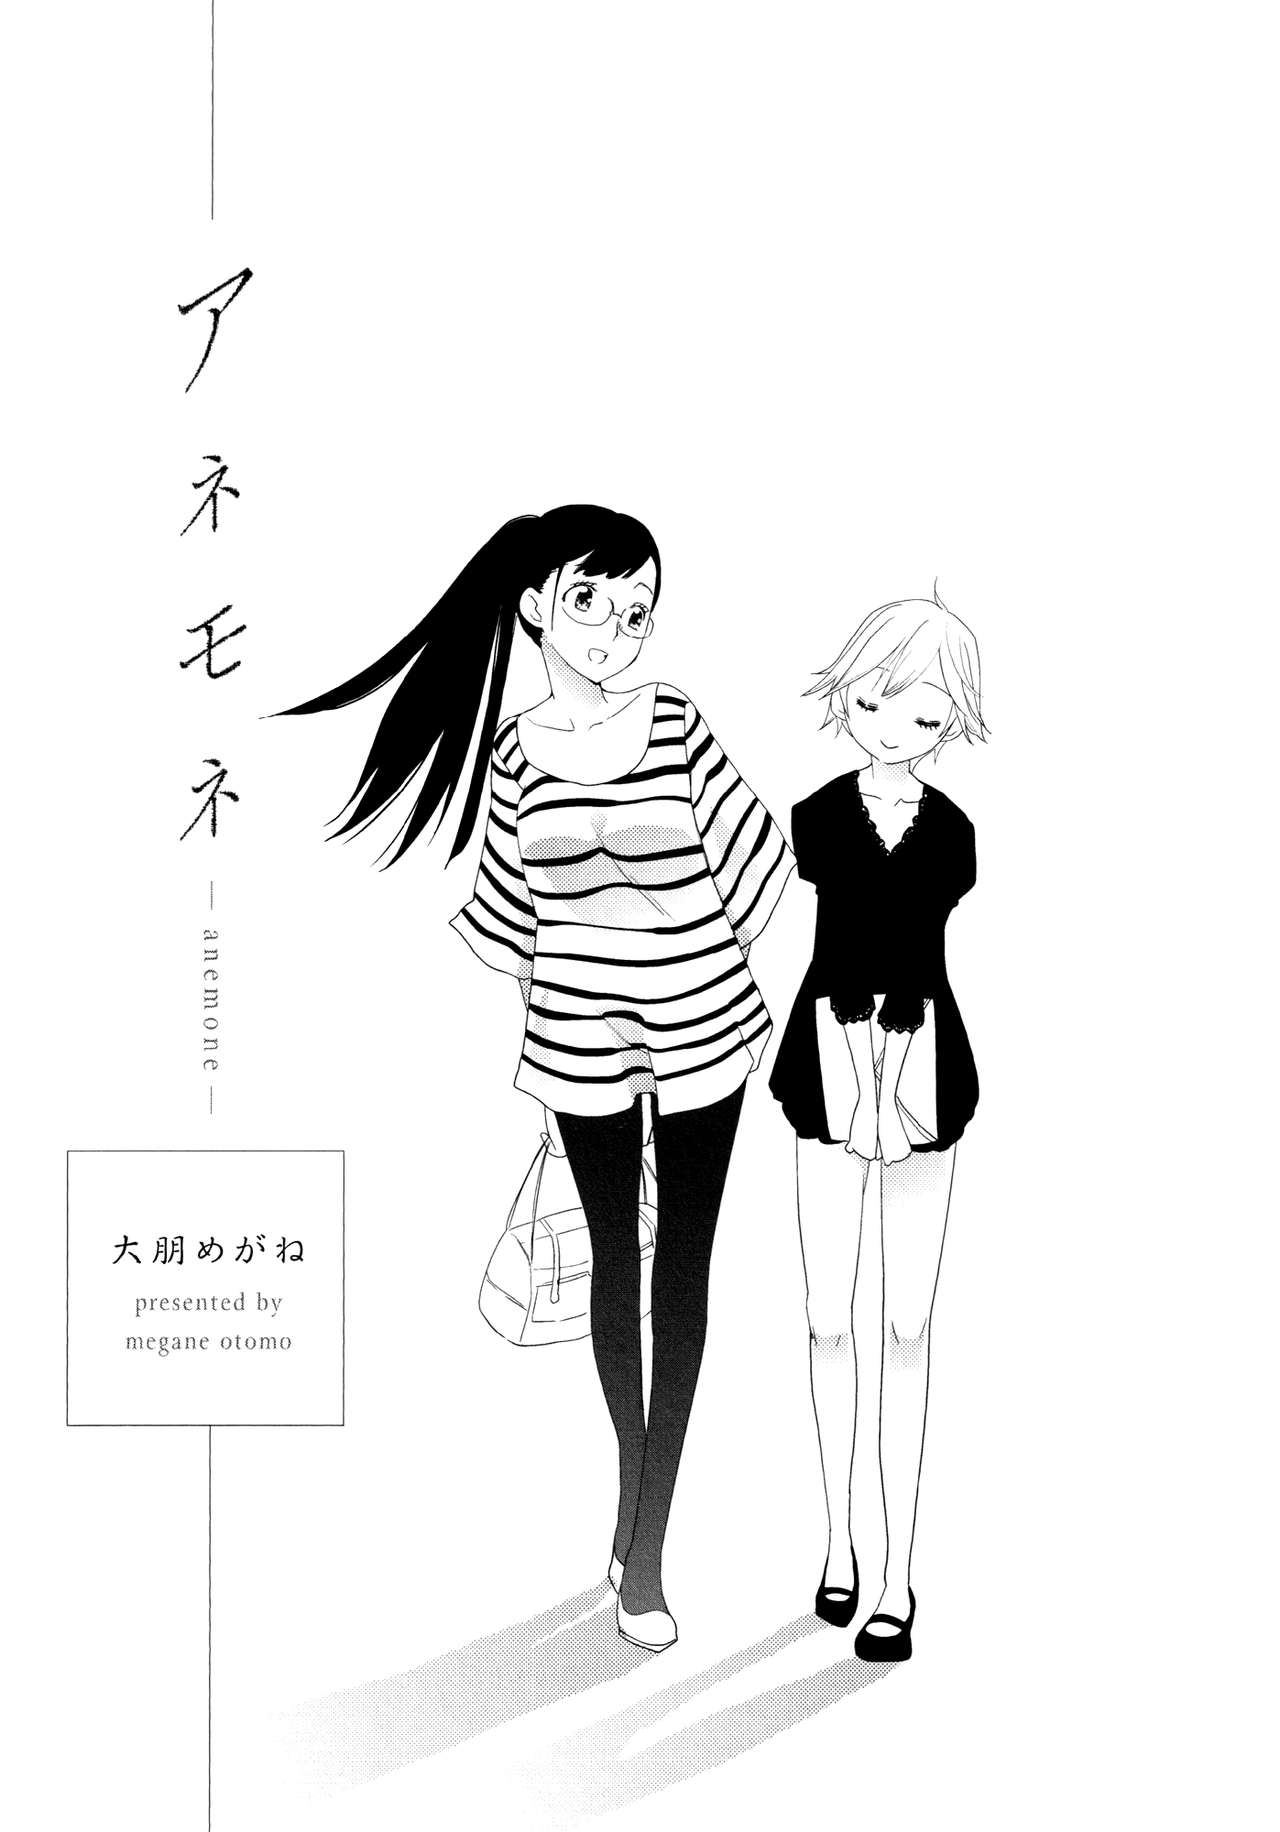 Ootomo Megane Anemone Hirari Vol. 13 English yuriproject 00